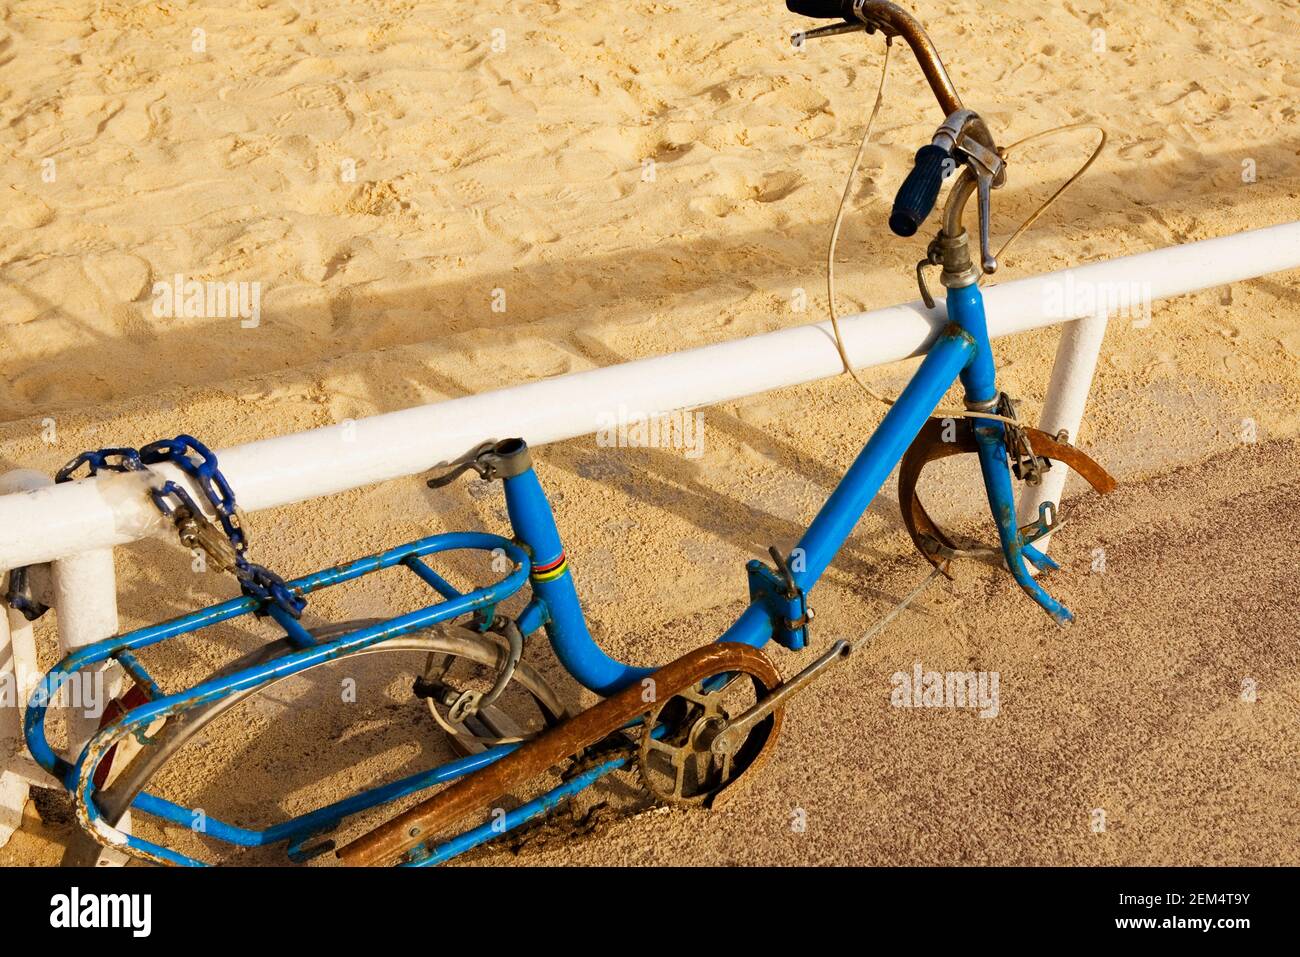 Primo piano di una bicicletta danneggiata sulla spiaggia Foto Stock